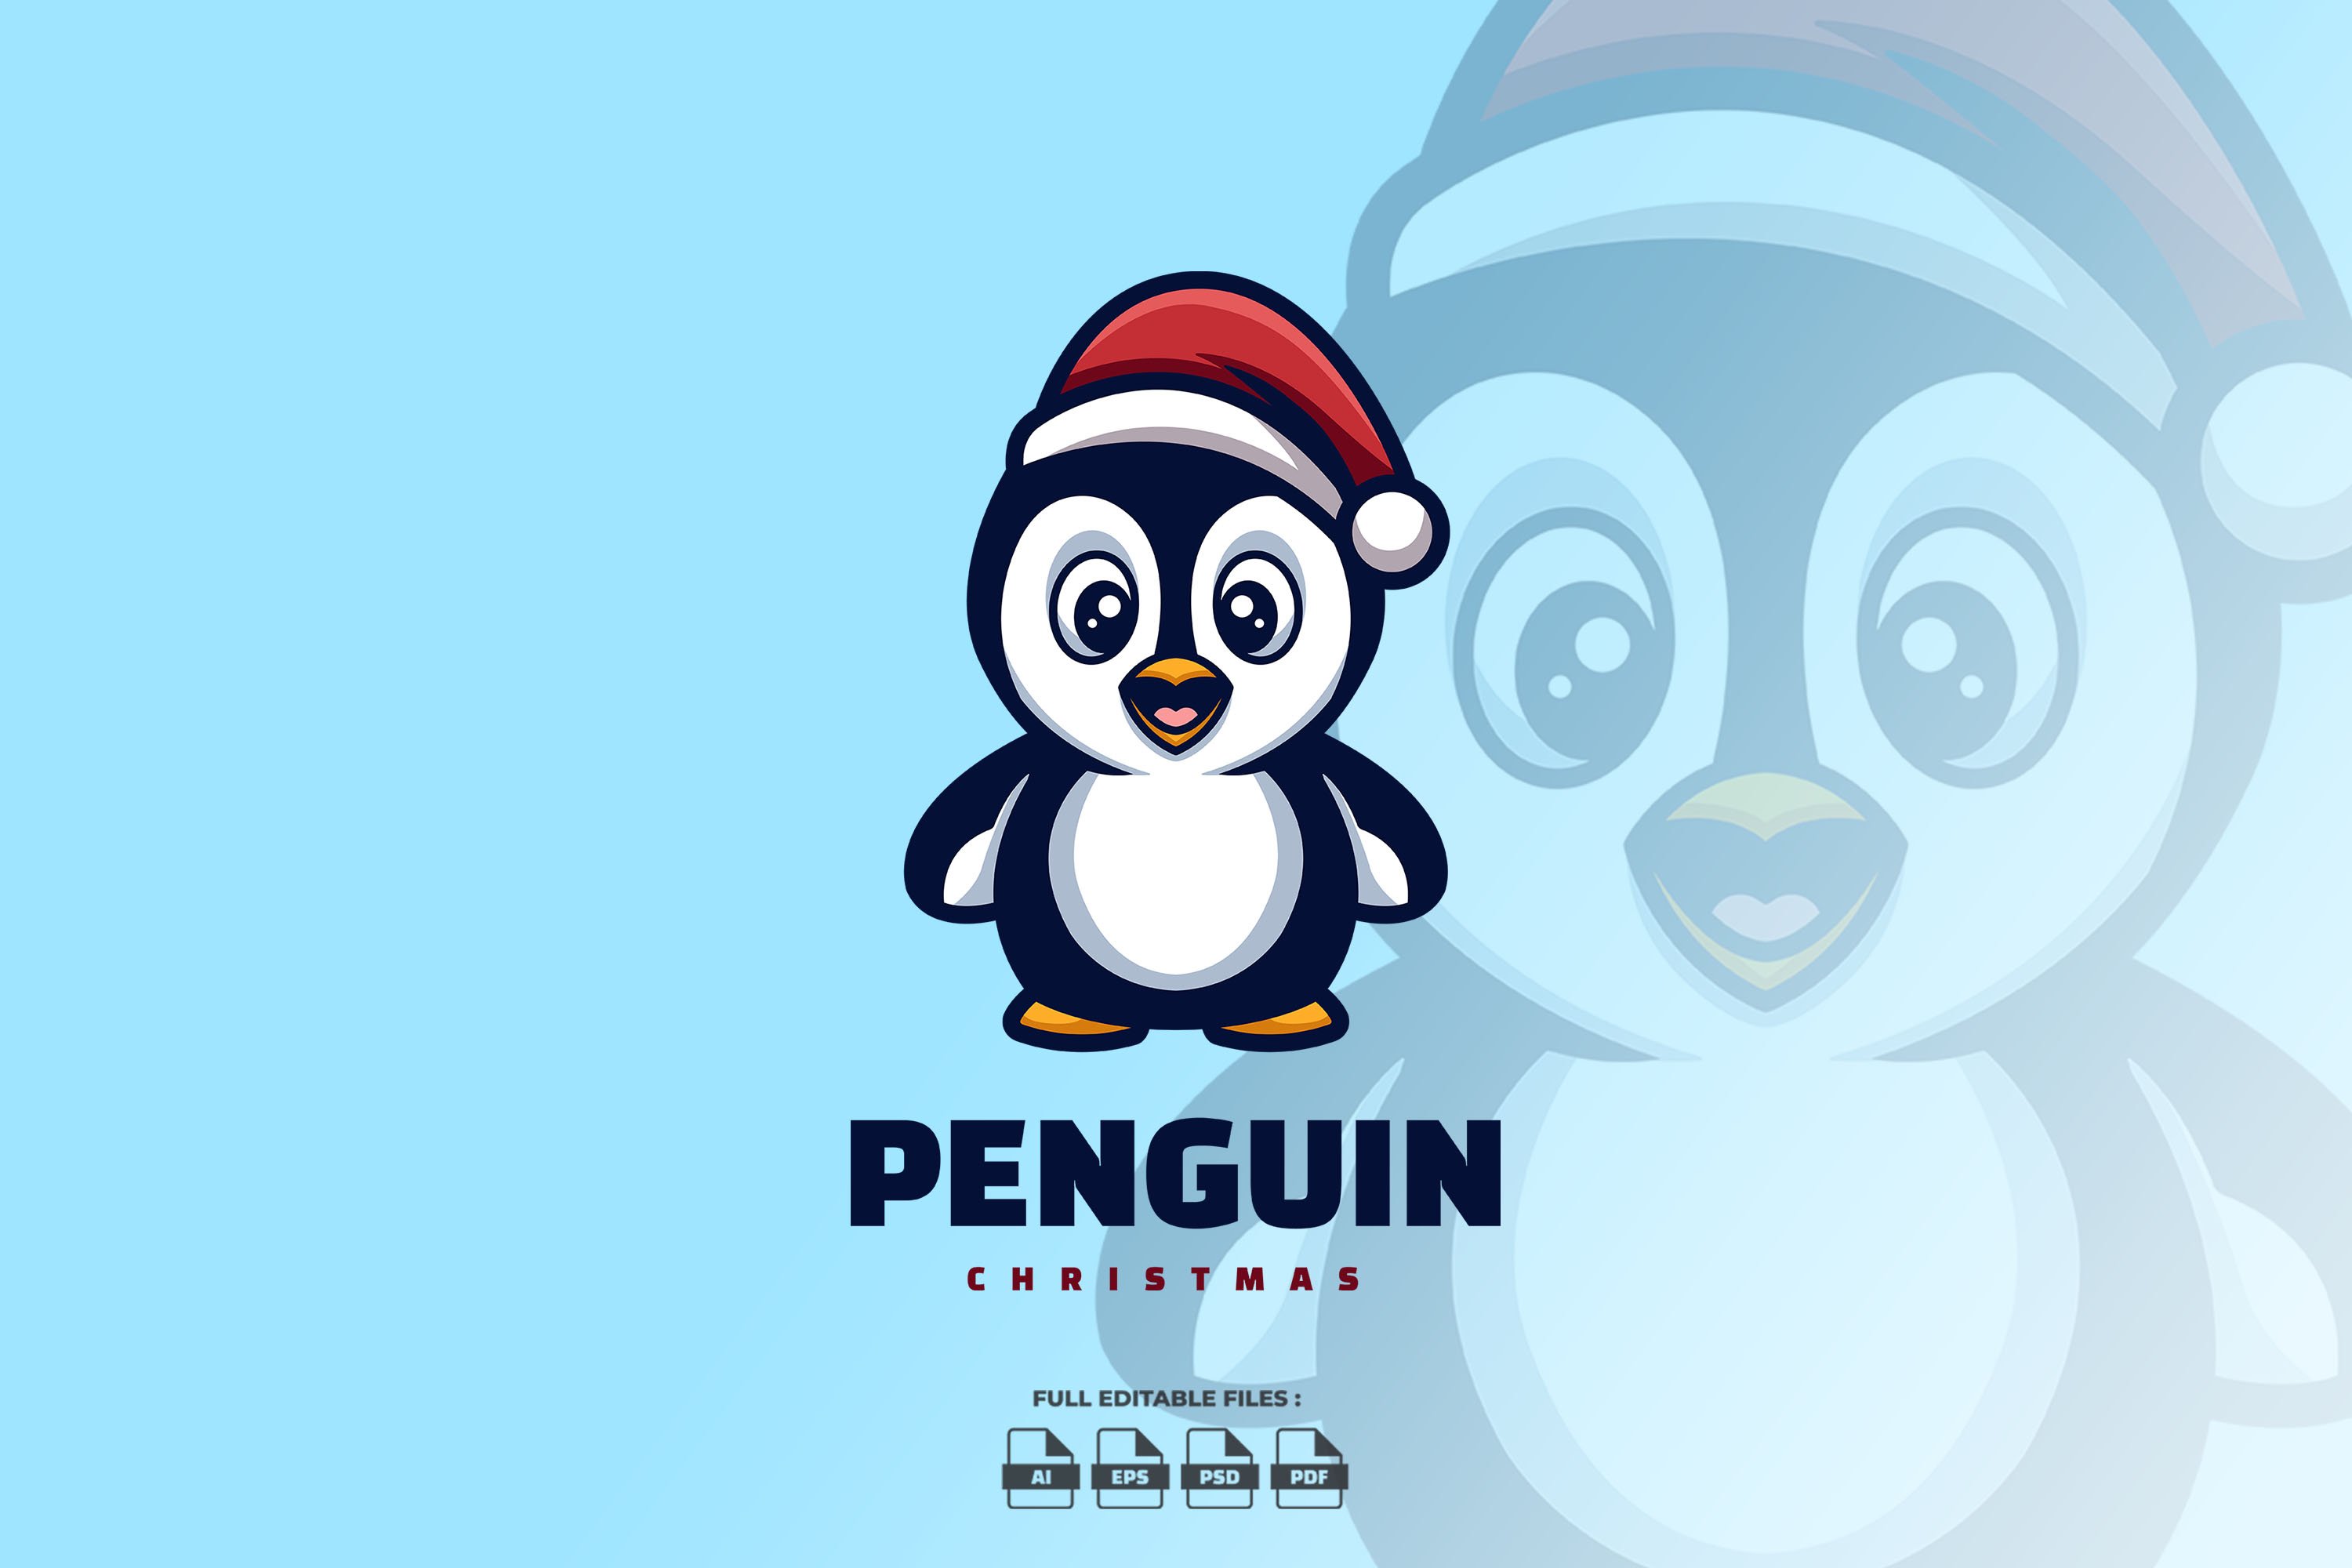 Penguin Christmas Cartoon Logo cover image.